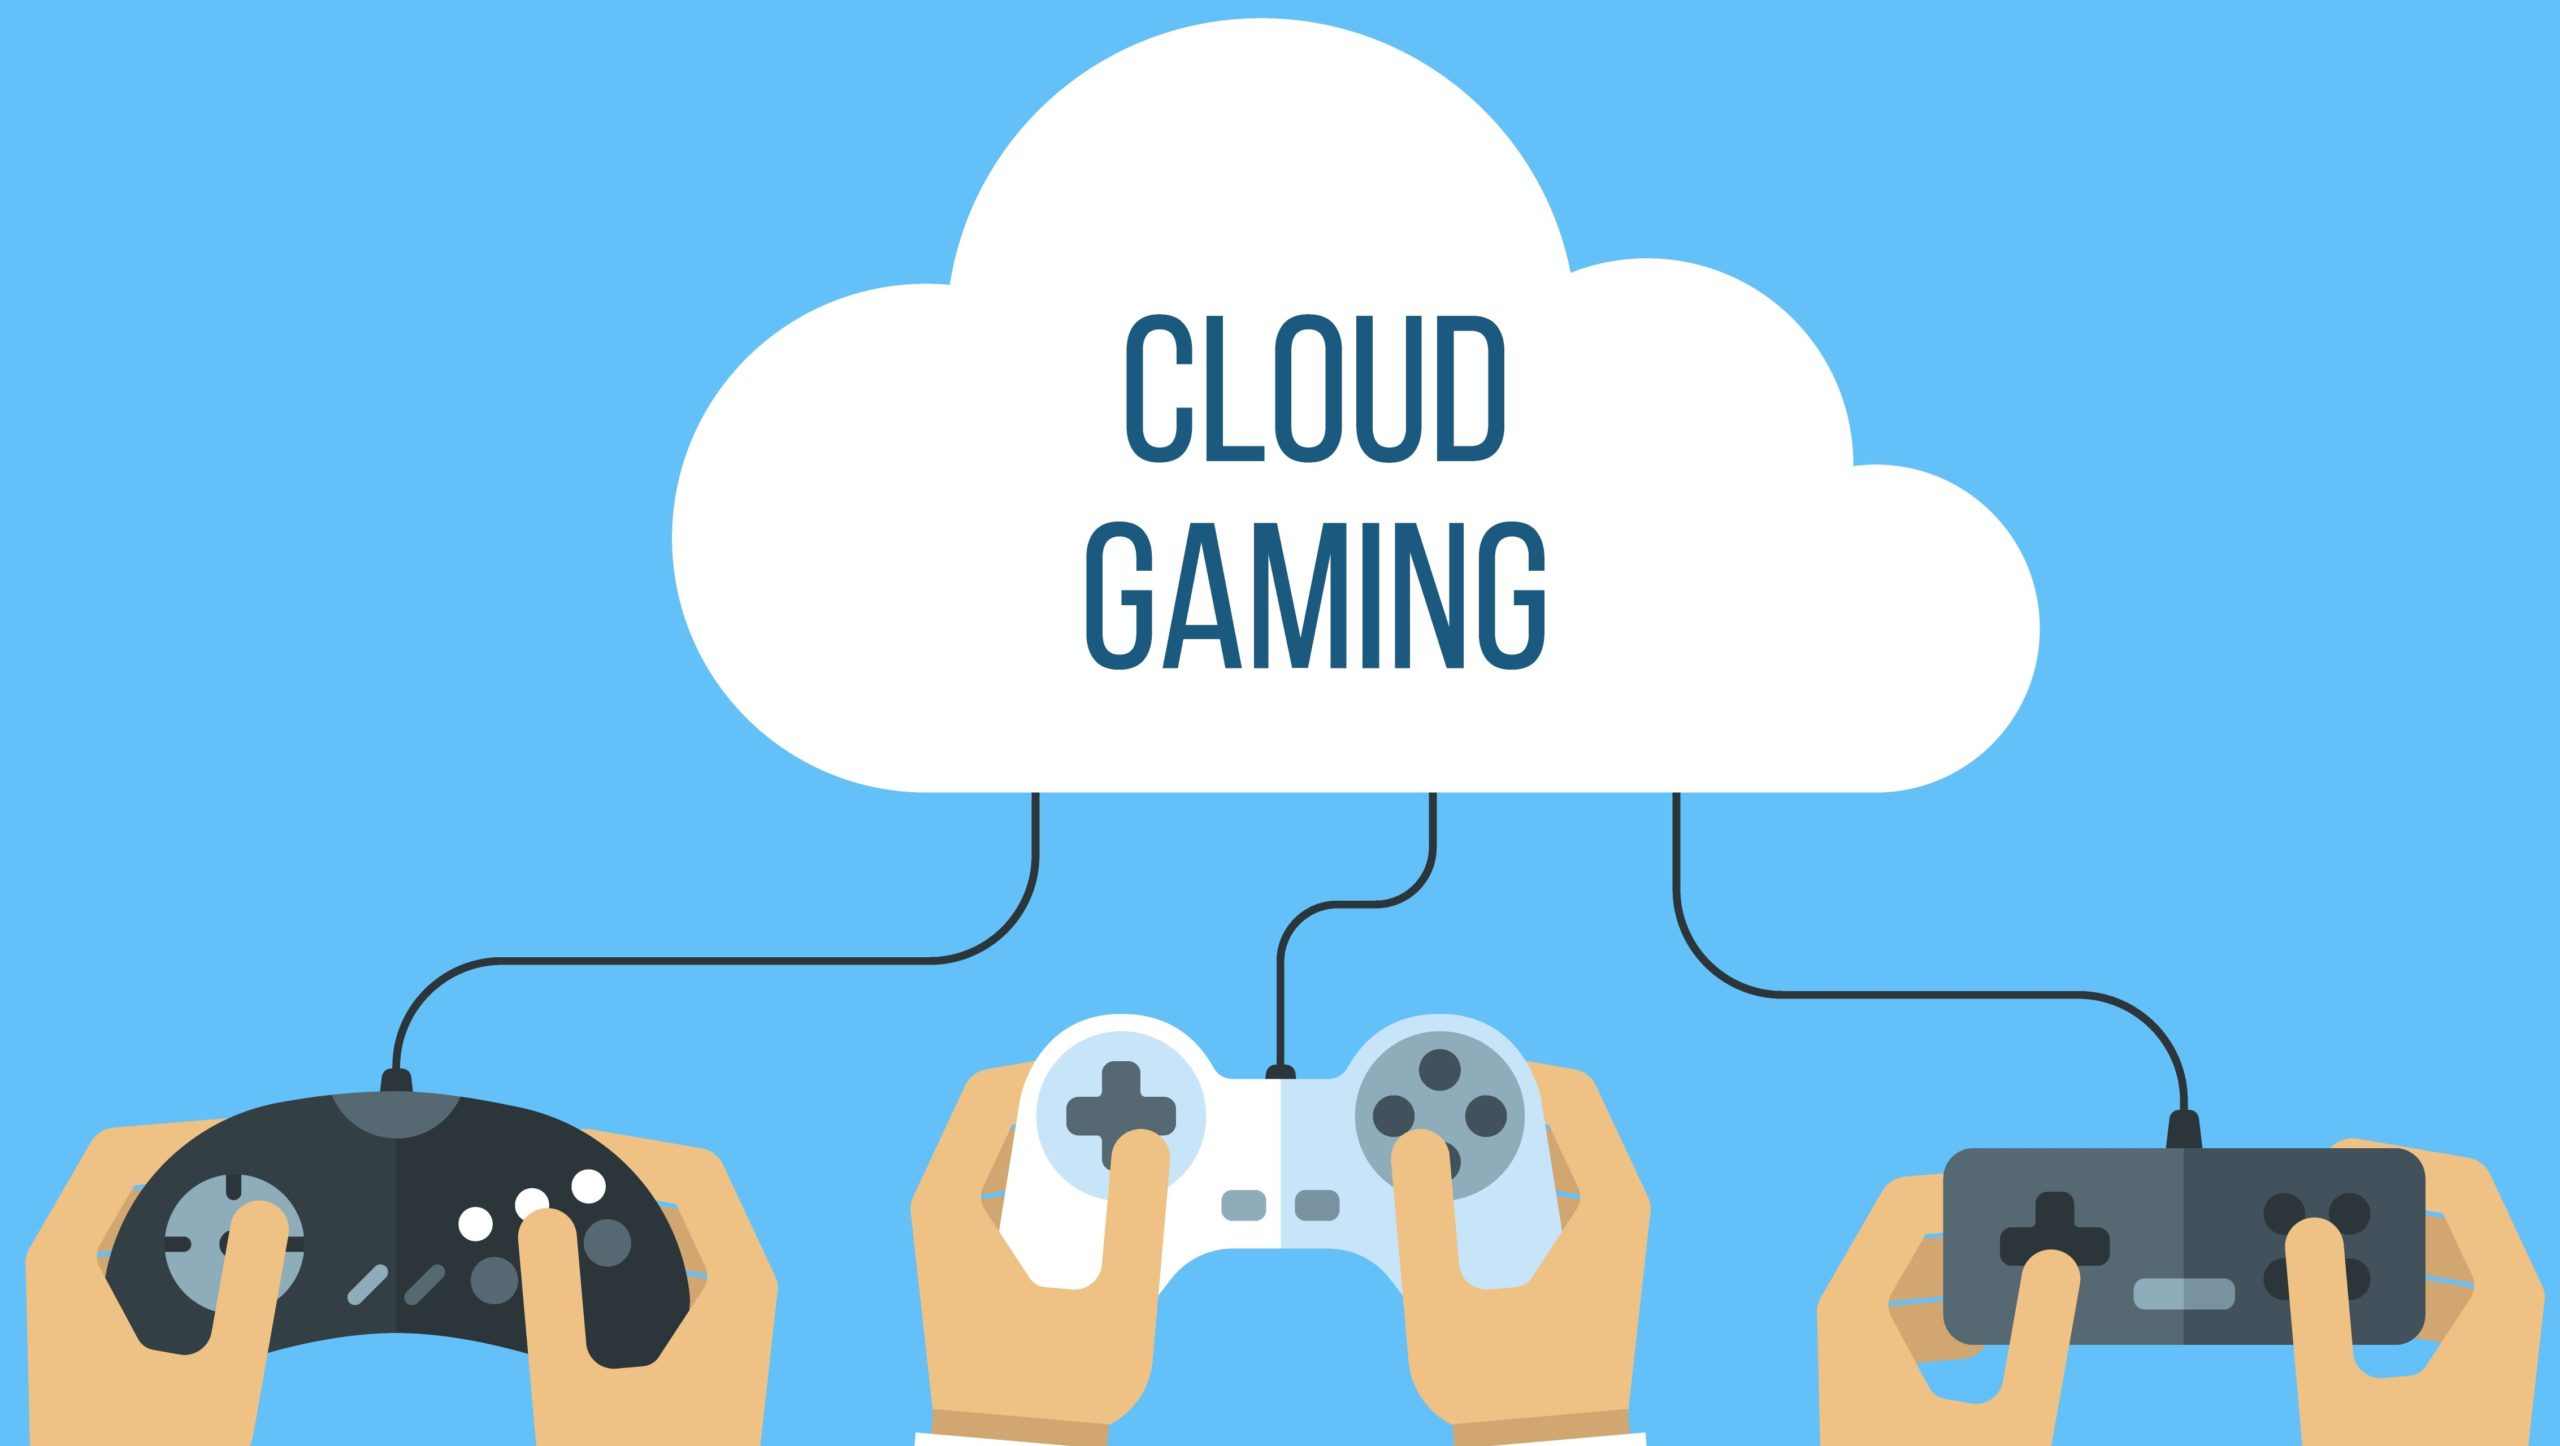 Boosteroid - Revisão e comparação com Xbox Cloud Gaming e Geforce Now